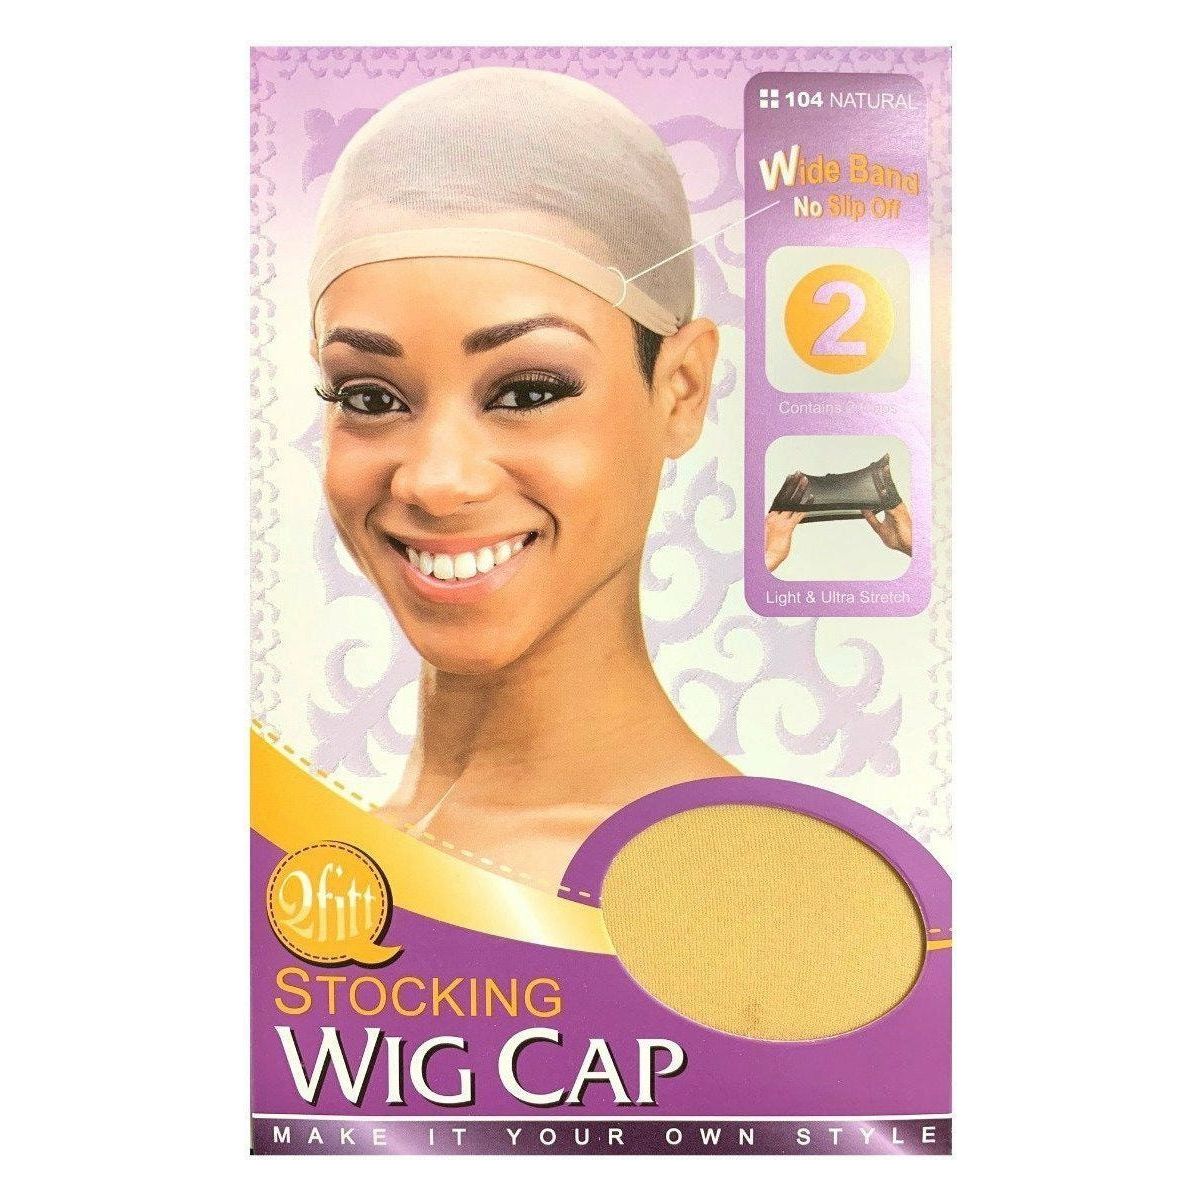 Qfitt Side Parting U-Part Wig Cap - 5014 Blk